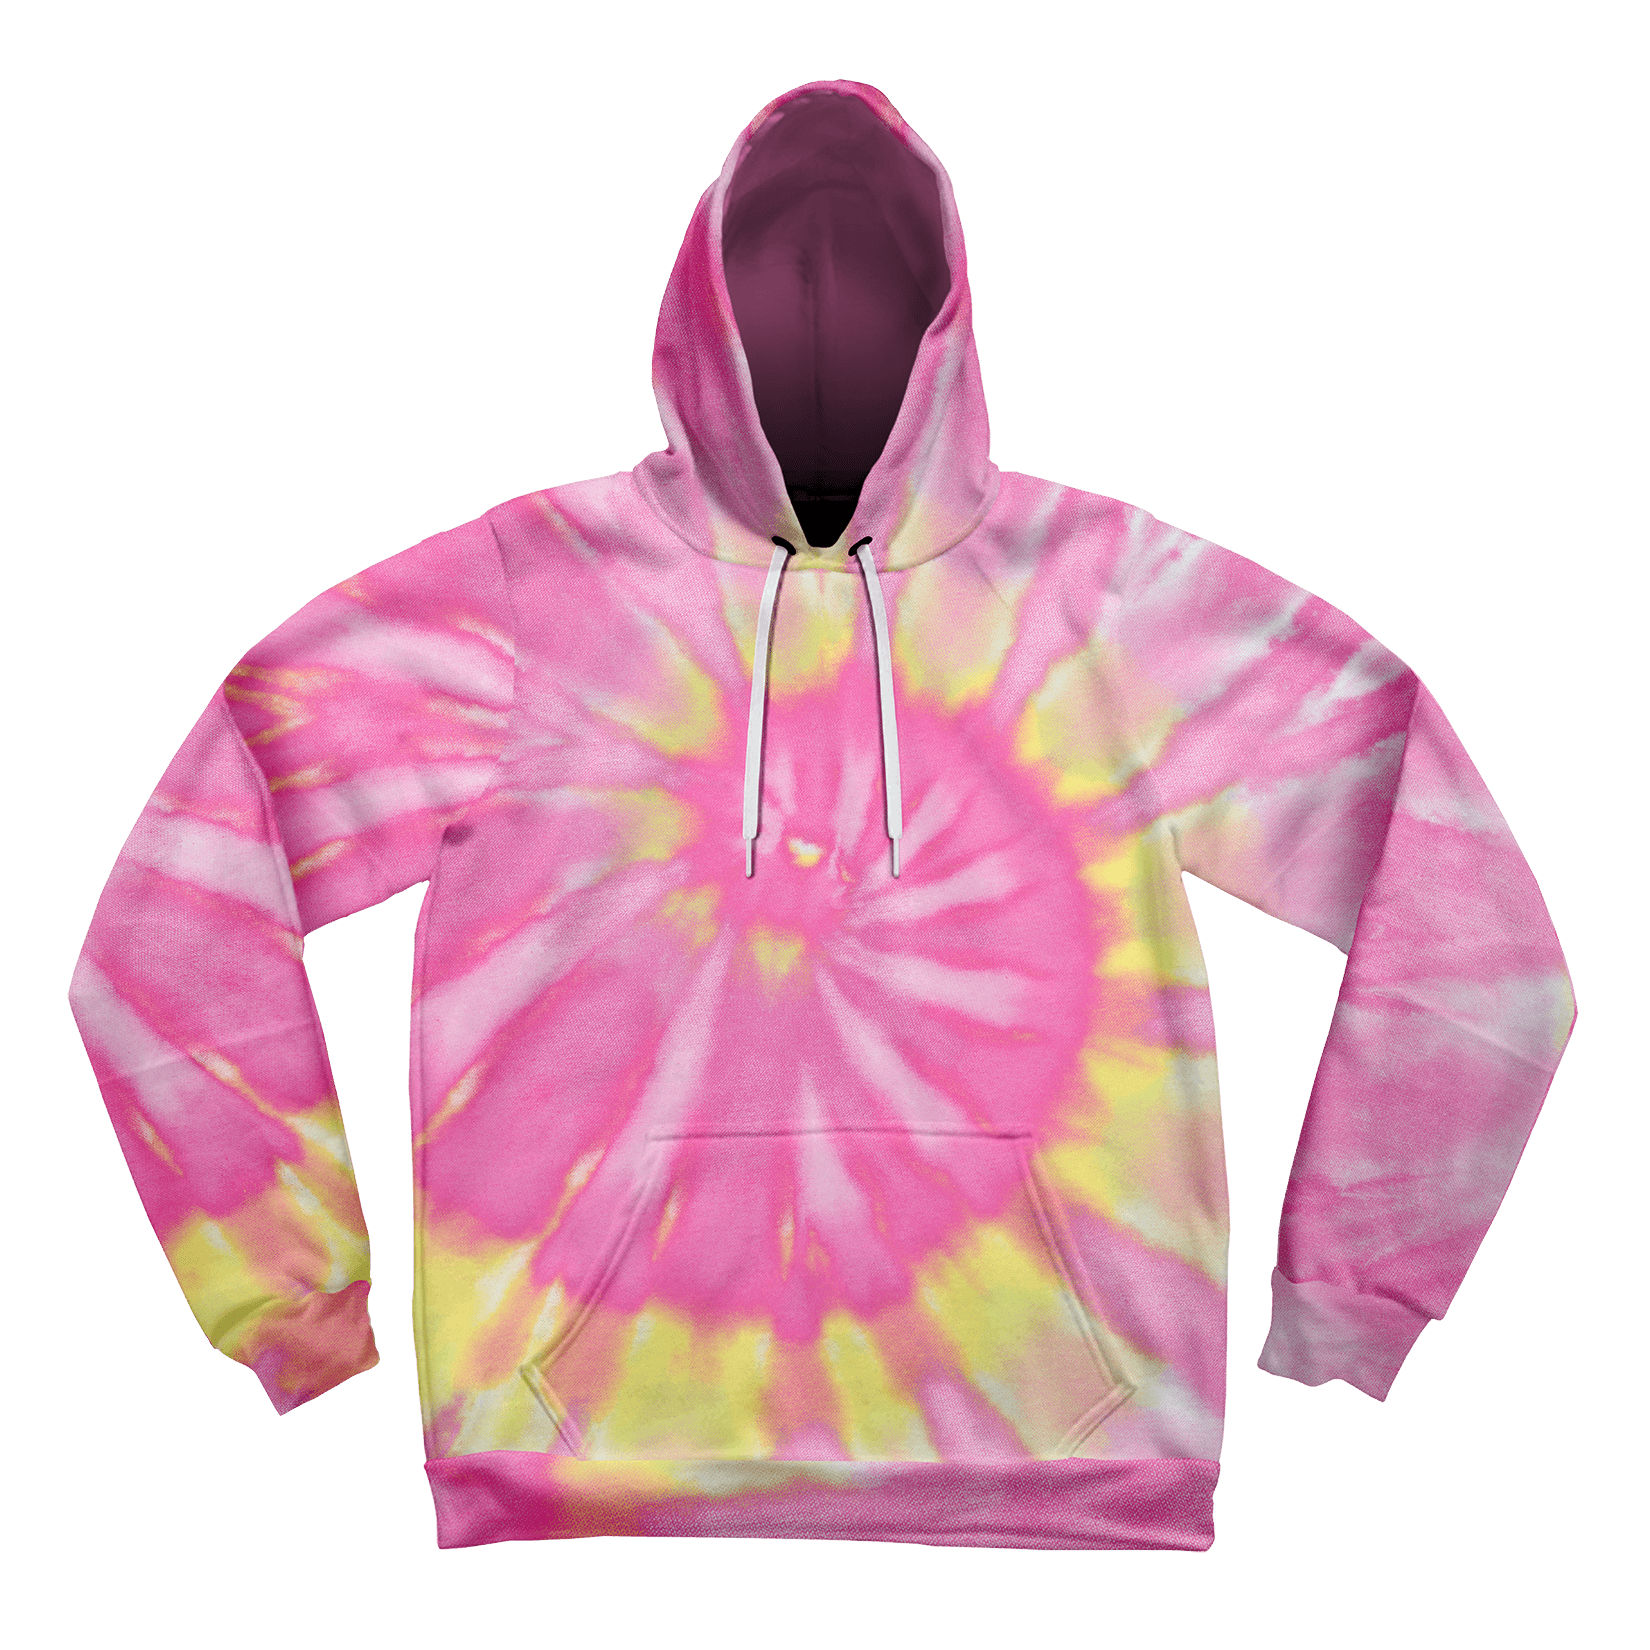 Neon Pink Tie-Dye Unisex Hoodie Pullover Hoodies Electro Threads 